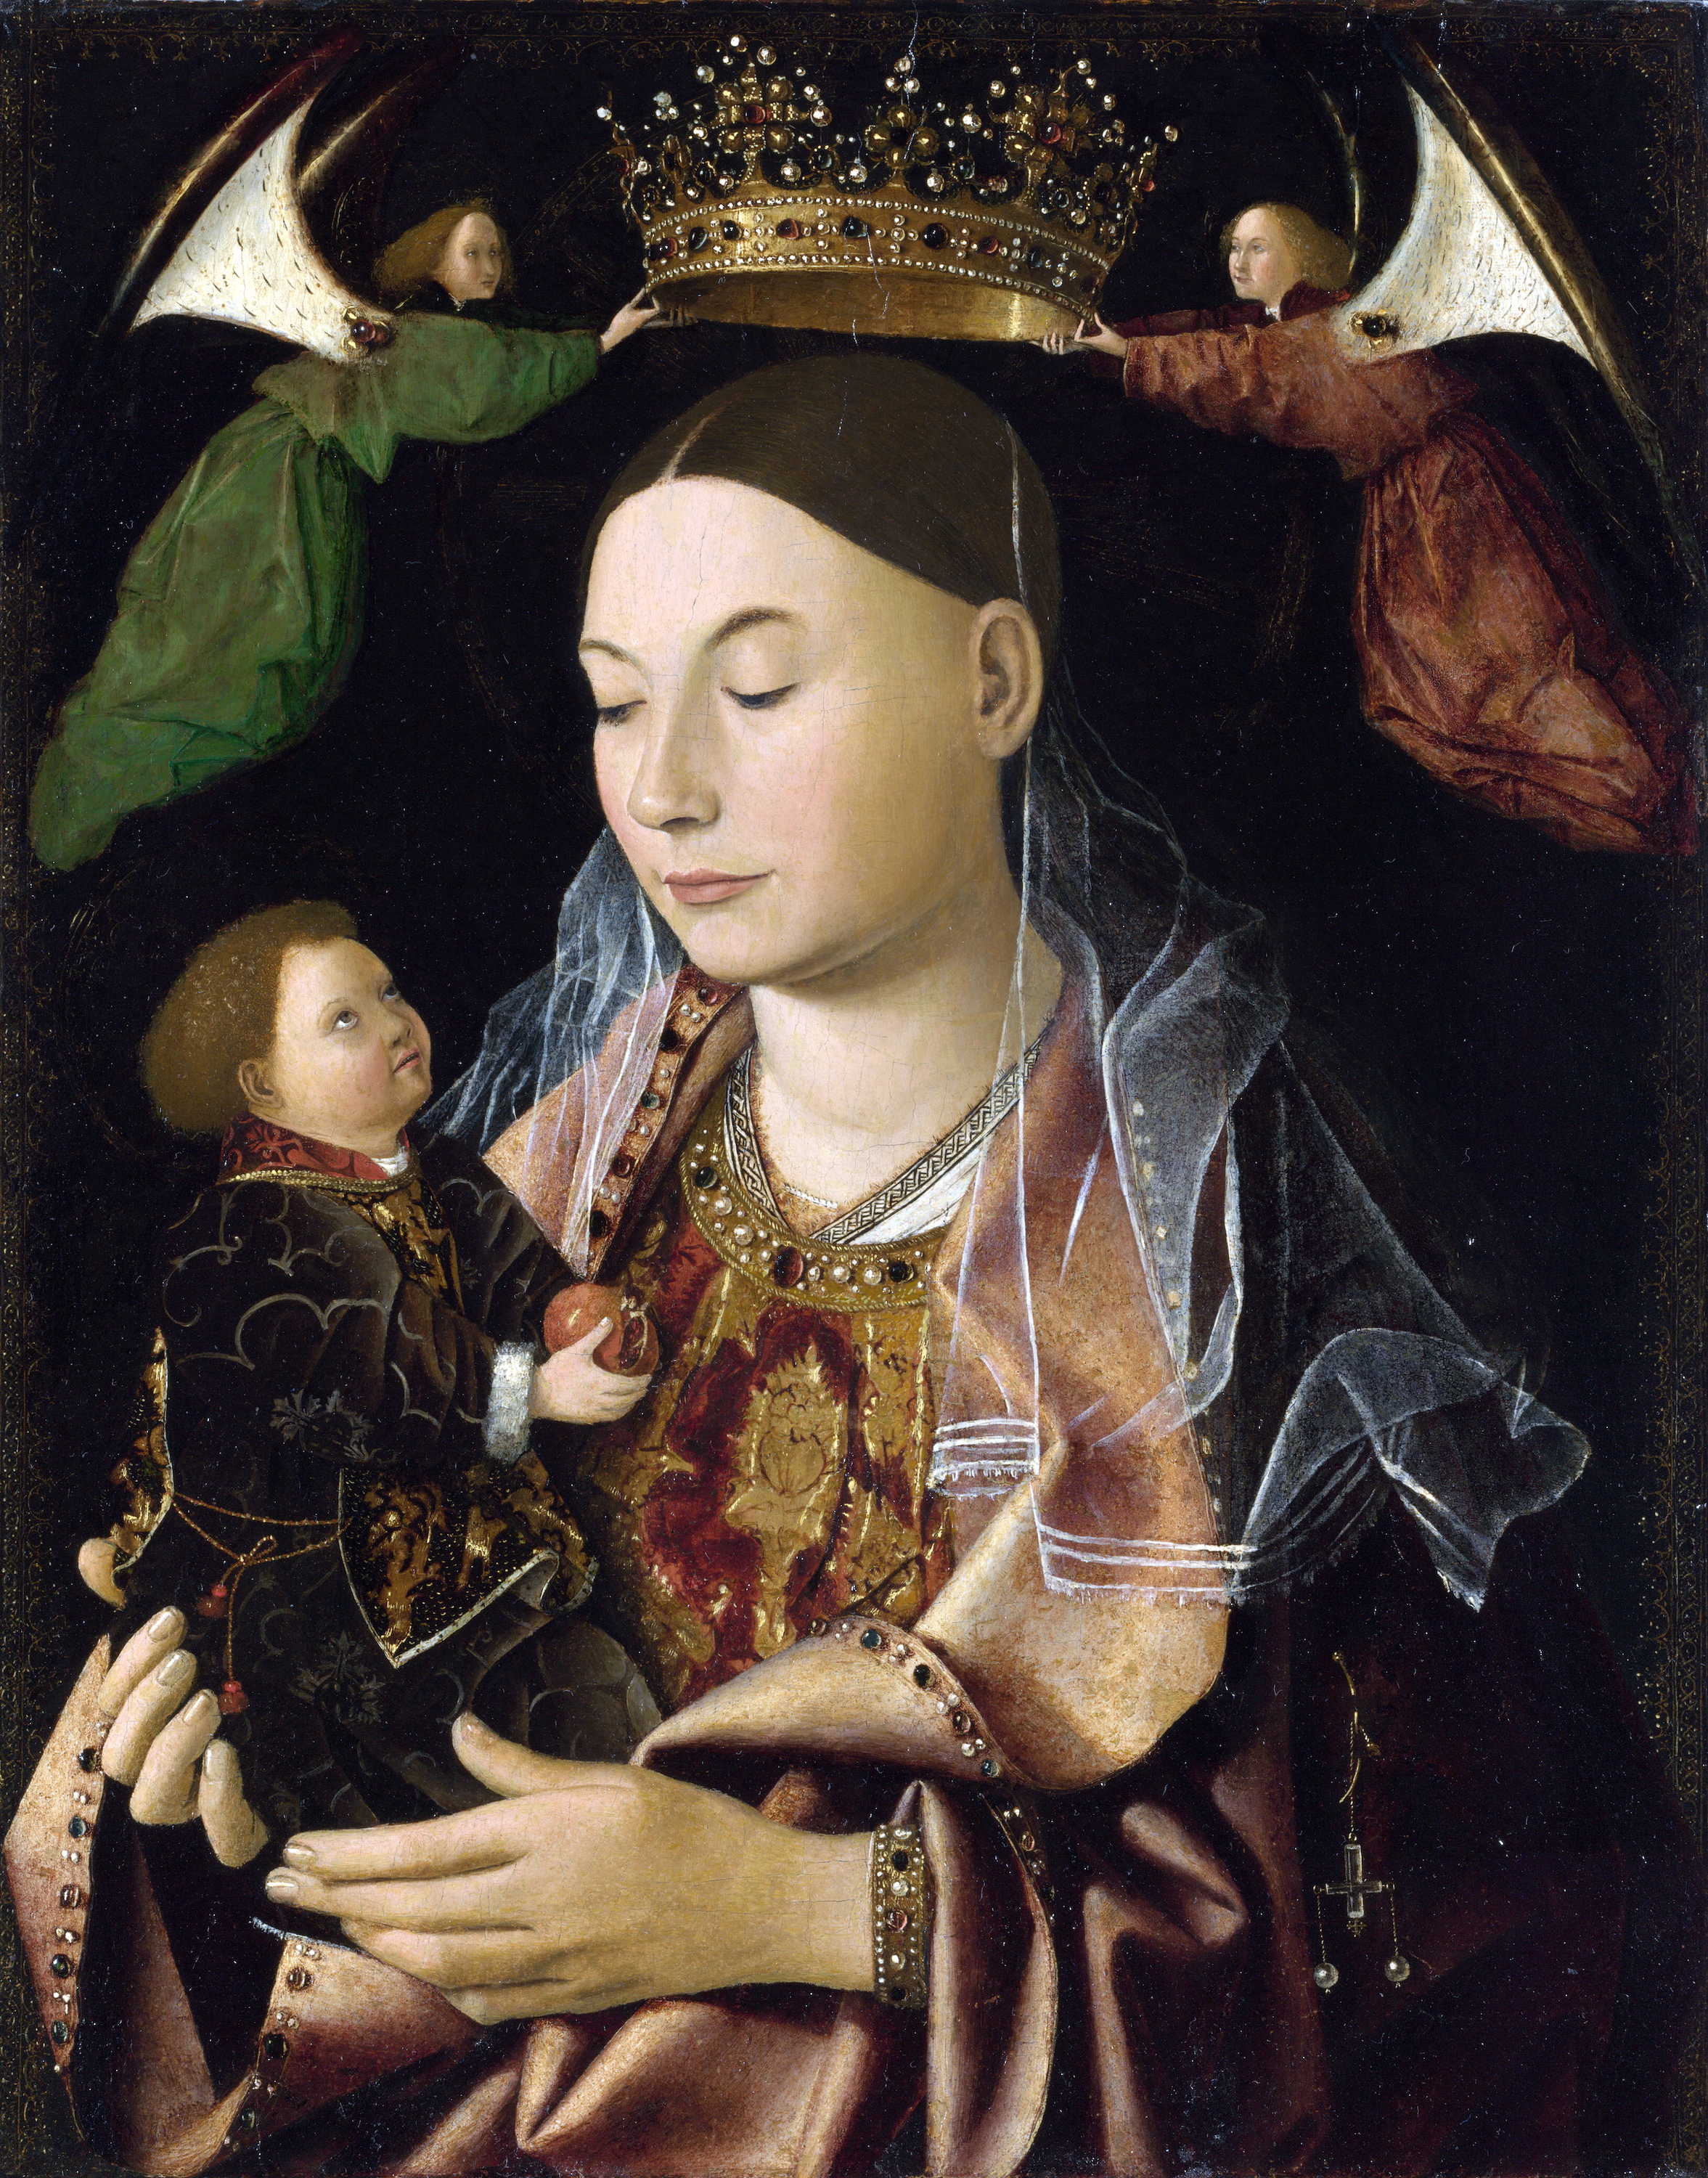 La Virgen con el Niño by Antonello da Messina - década de 1460 - 43.2 × 34.3 cm Galería Nacional